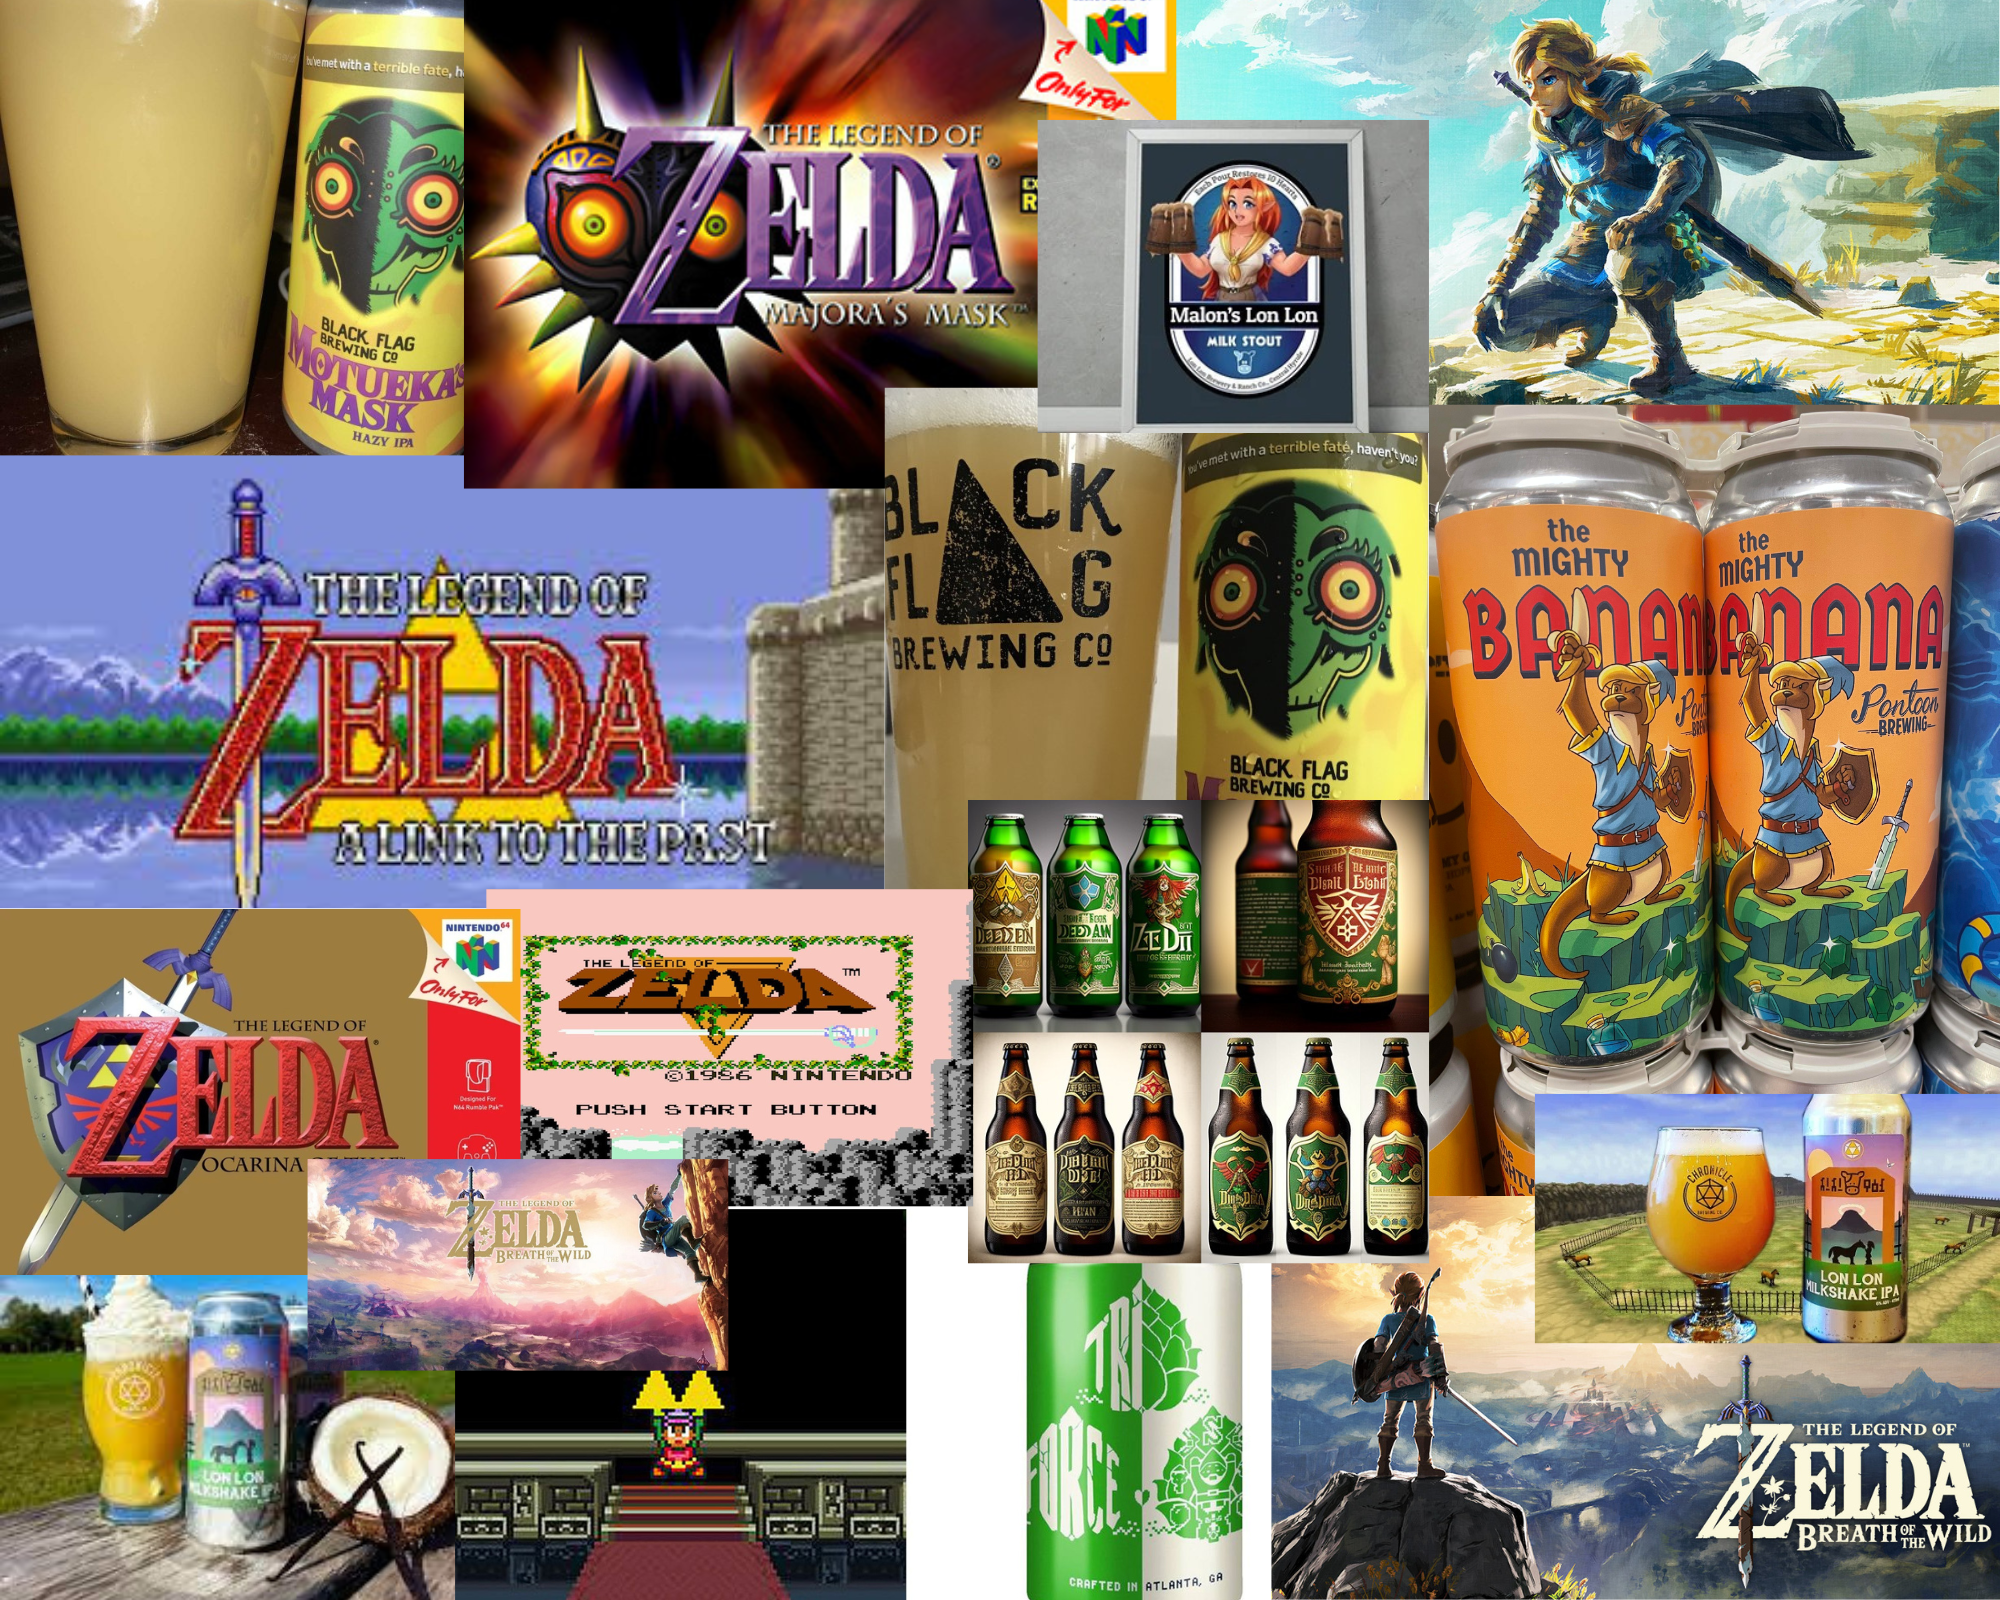 Get The Legend of Zelda: Four Swords free for 4-days - Pure Nintendo